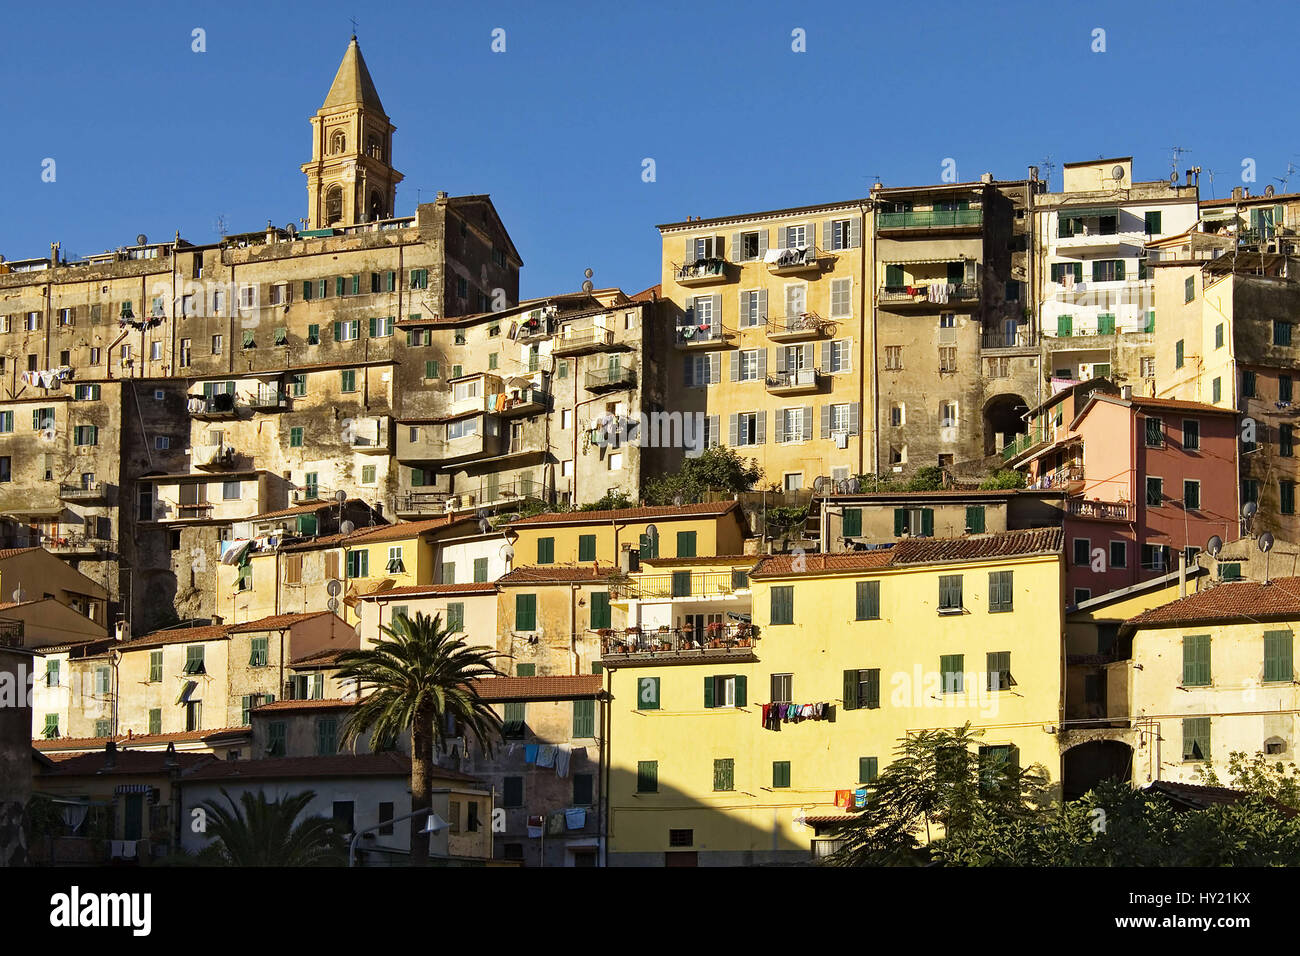 Die Altstadt von Ventimiglia in Ligurien, Italien. Der mittelalterliche Ort erhebt sich Ã¼ber dem Fluss Roia auf einem HÃ¼gel, auf dem Reste der alten Stock Photo